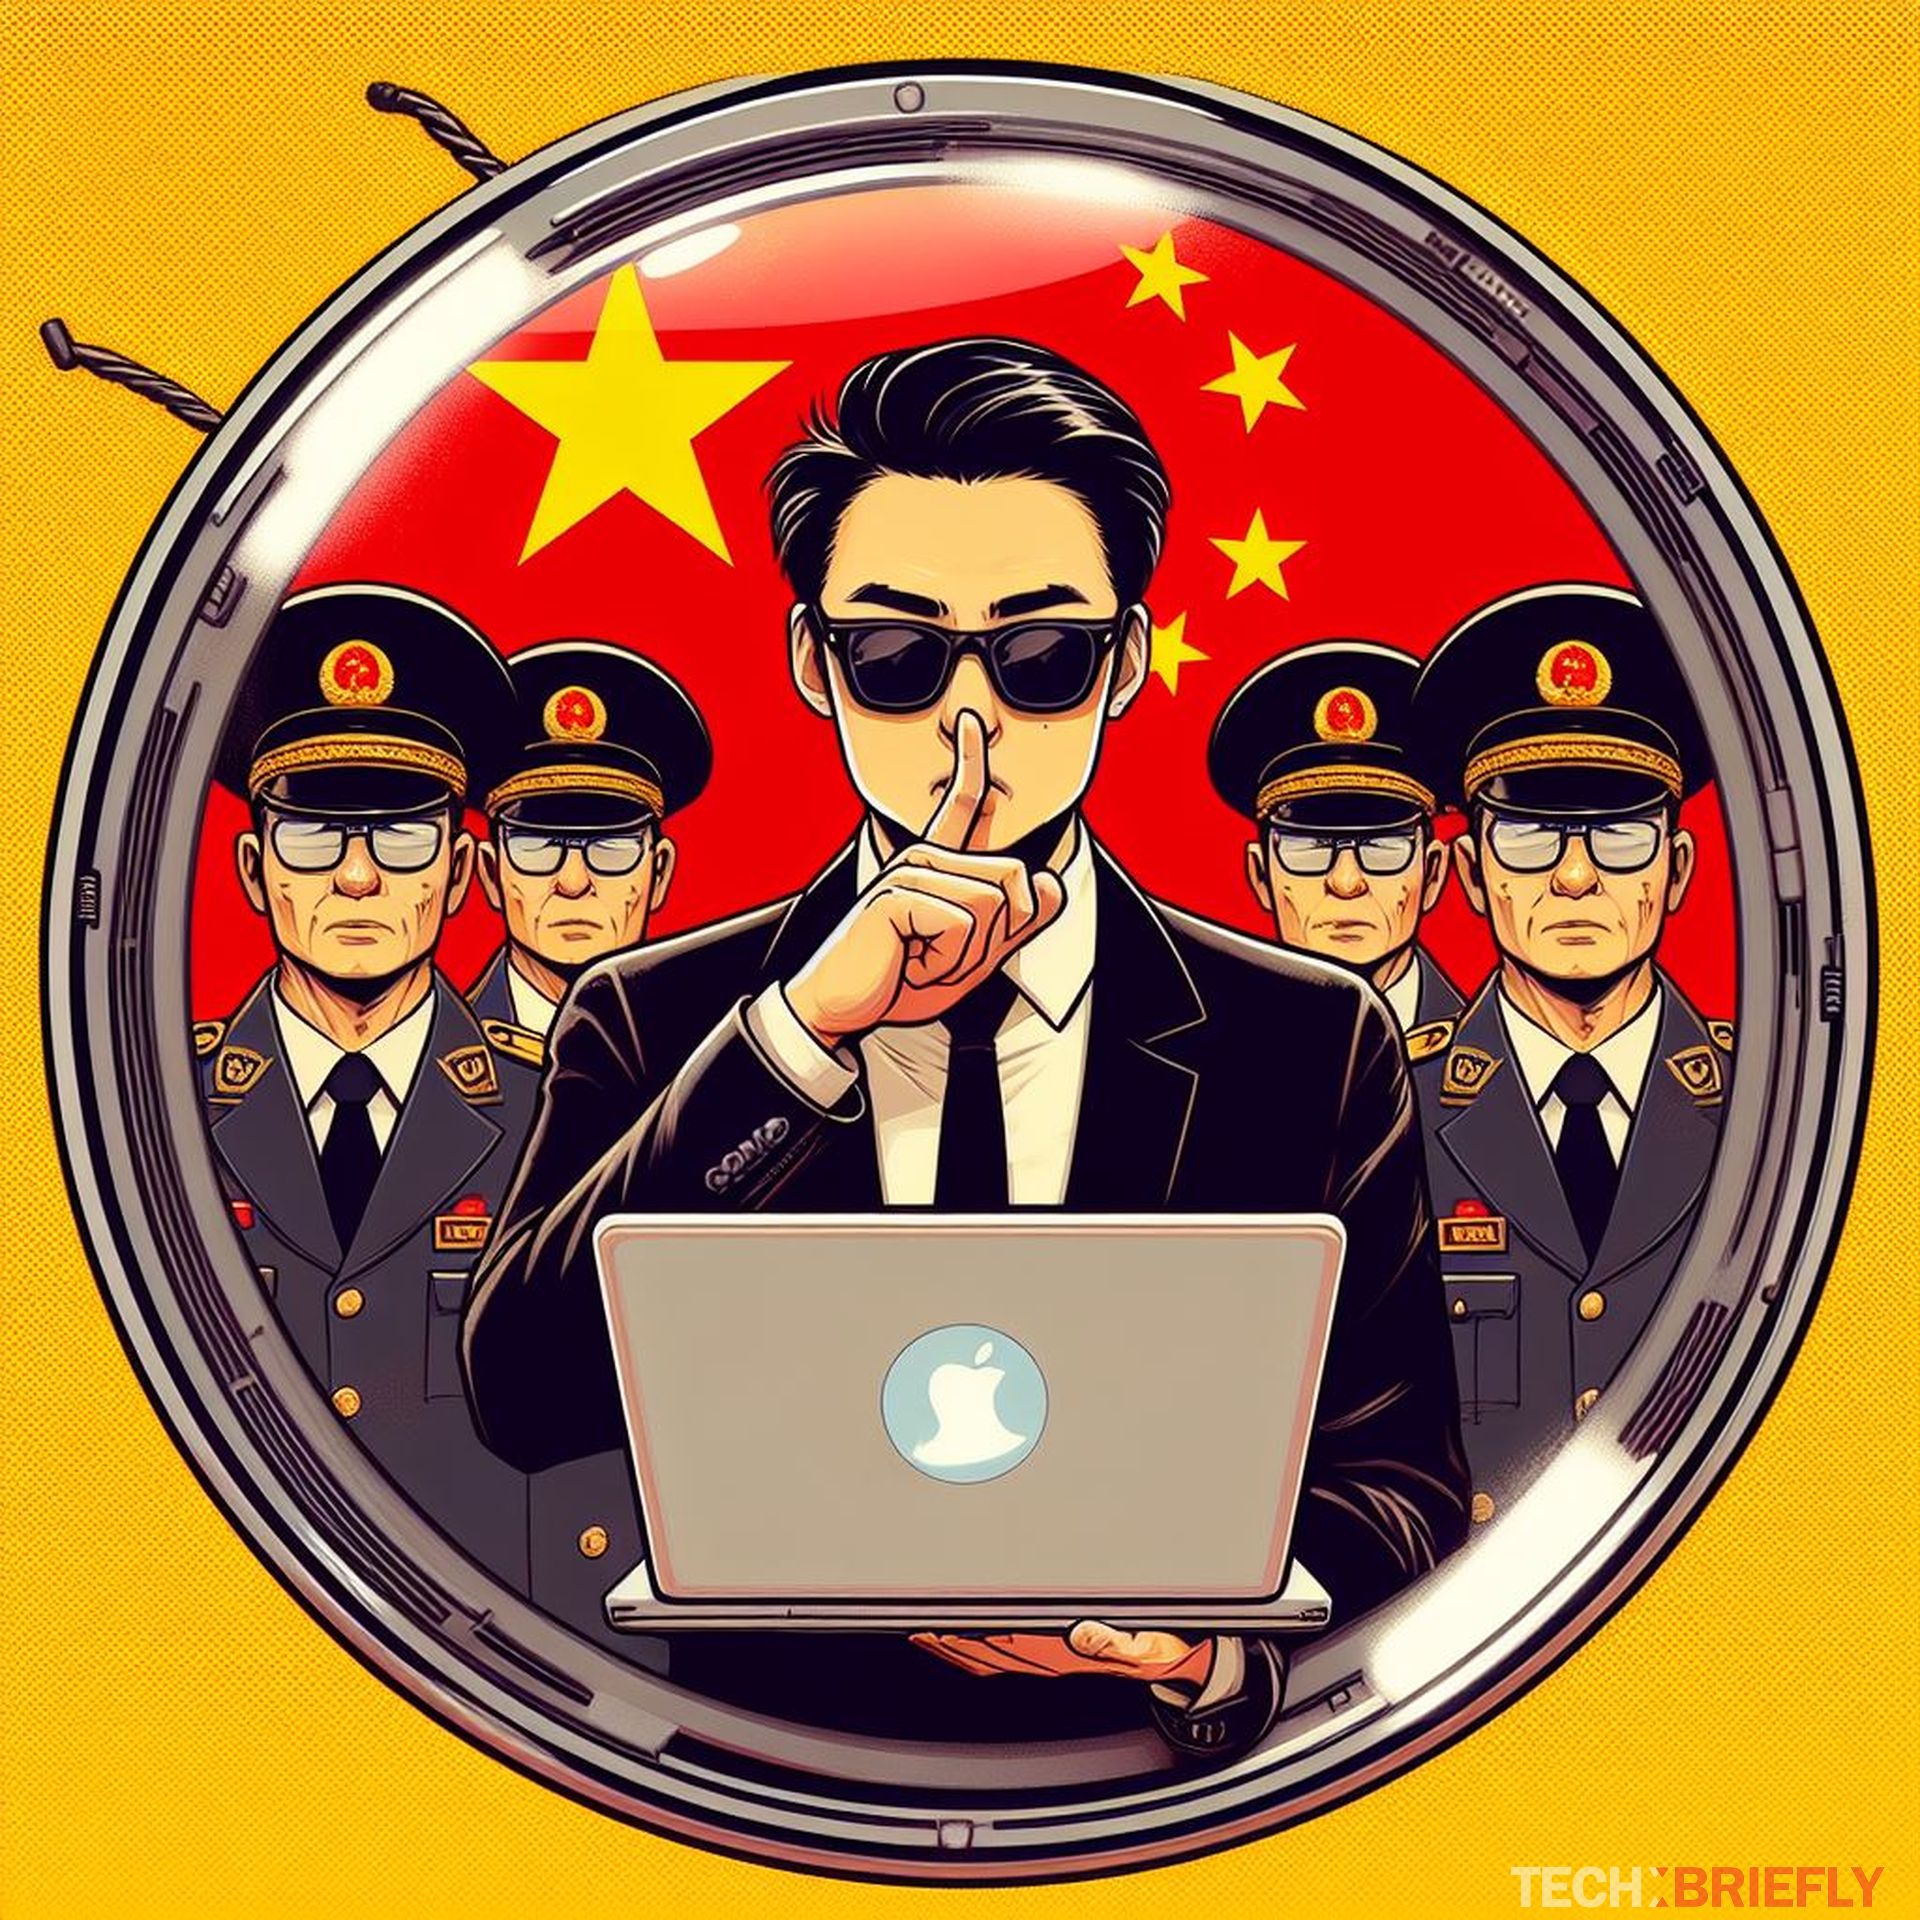 Китайские интернет-шпионы охотятся за цифровыми замками, чтобы украсть важные данные